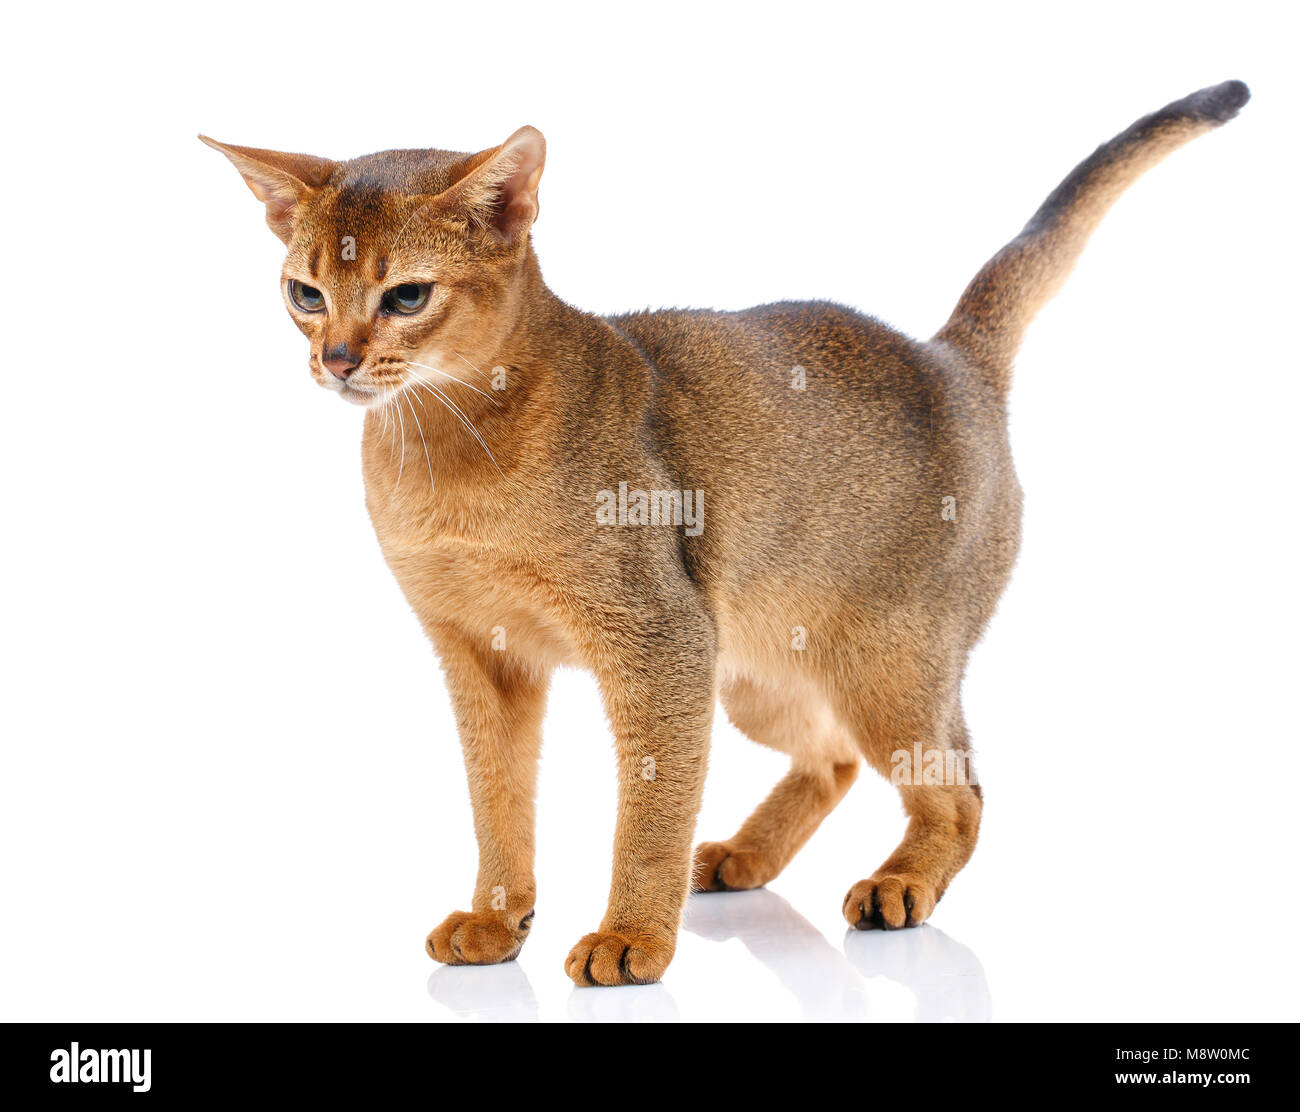 Rothaarige Katze abyssyn stehen und neben der Suche Front auf weißem Hintergrund Stockfoto